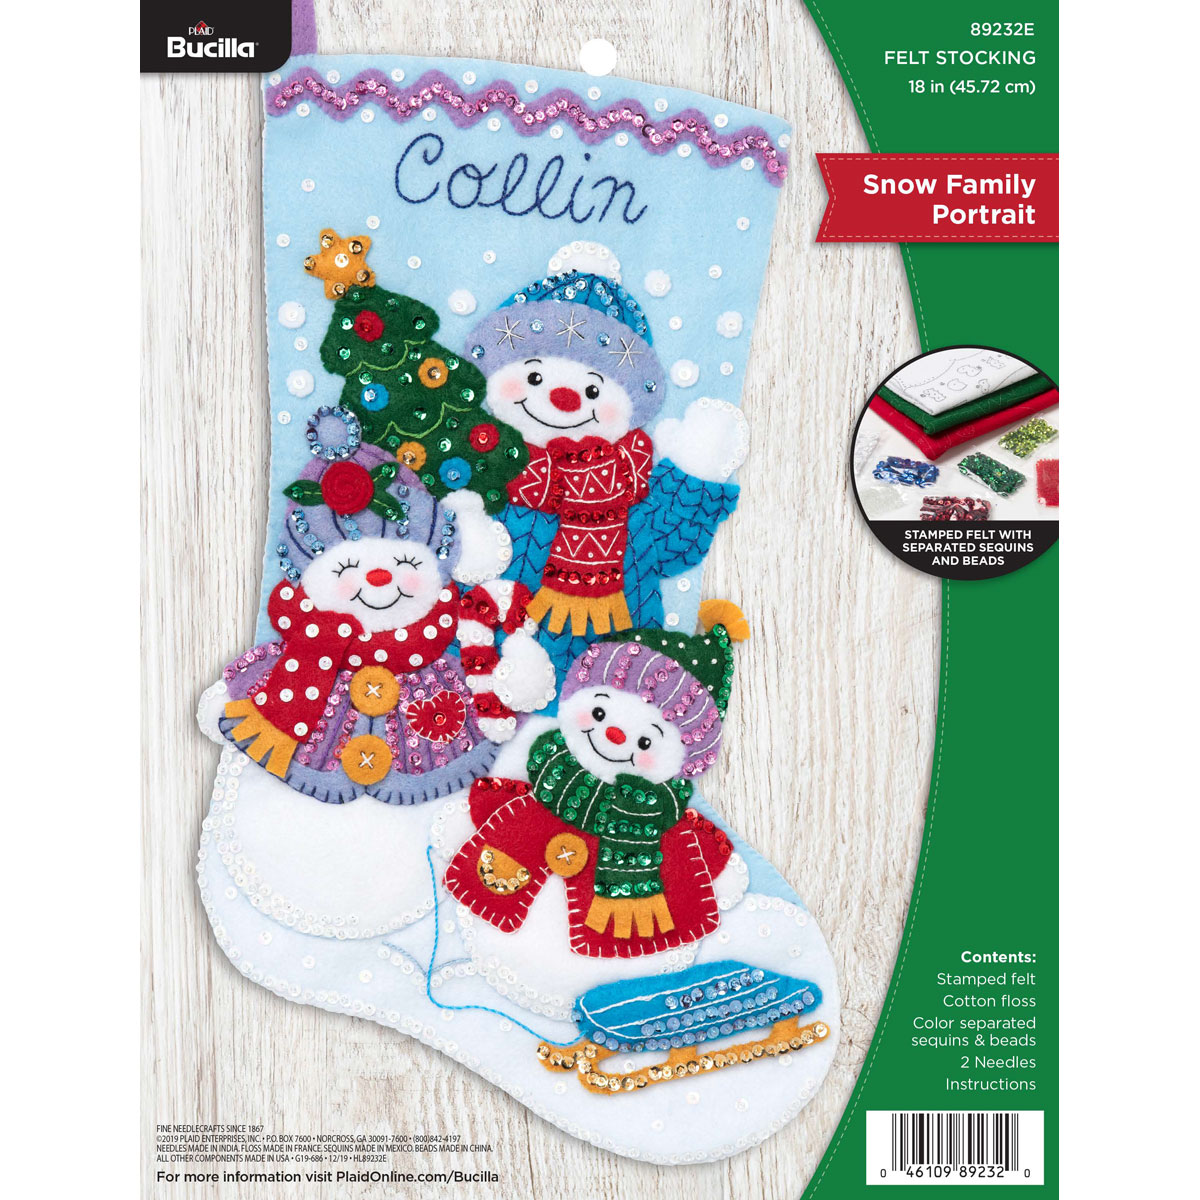 Shop Plaid Bucilla ® Seasonal - Felt - Stocking Kits - Christmas Hugs -  89253E - 89253E